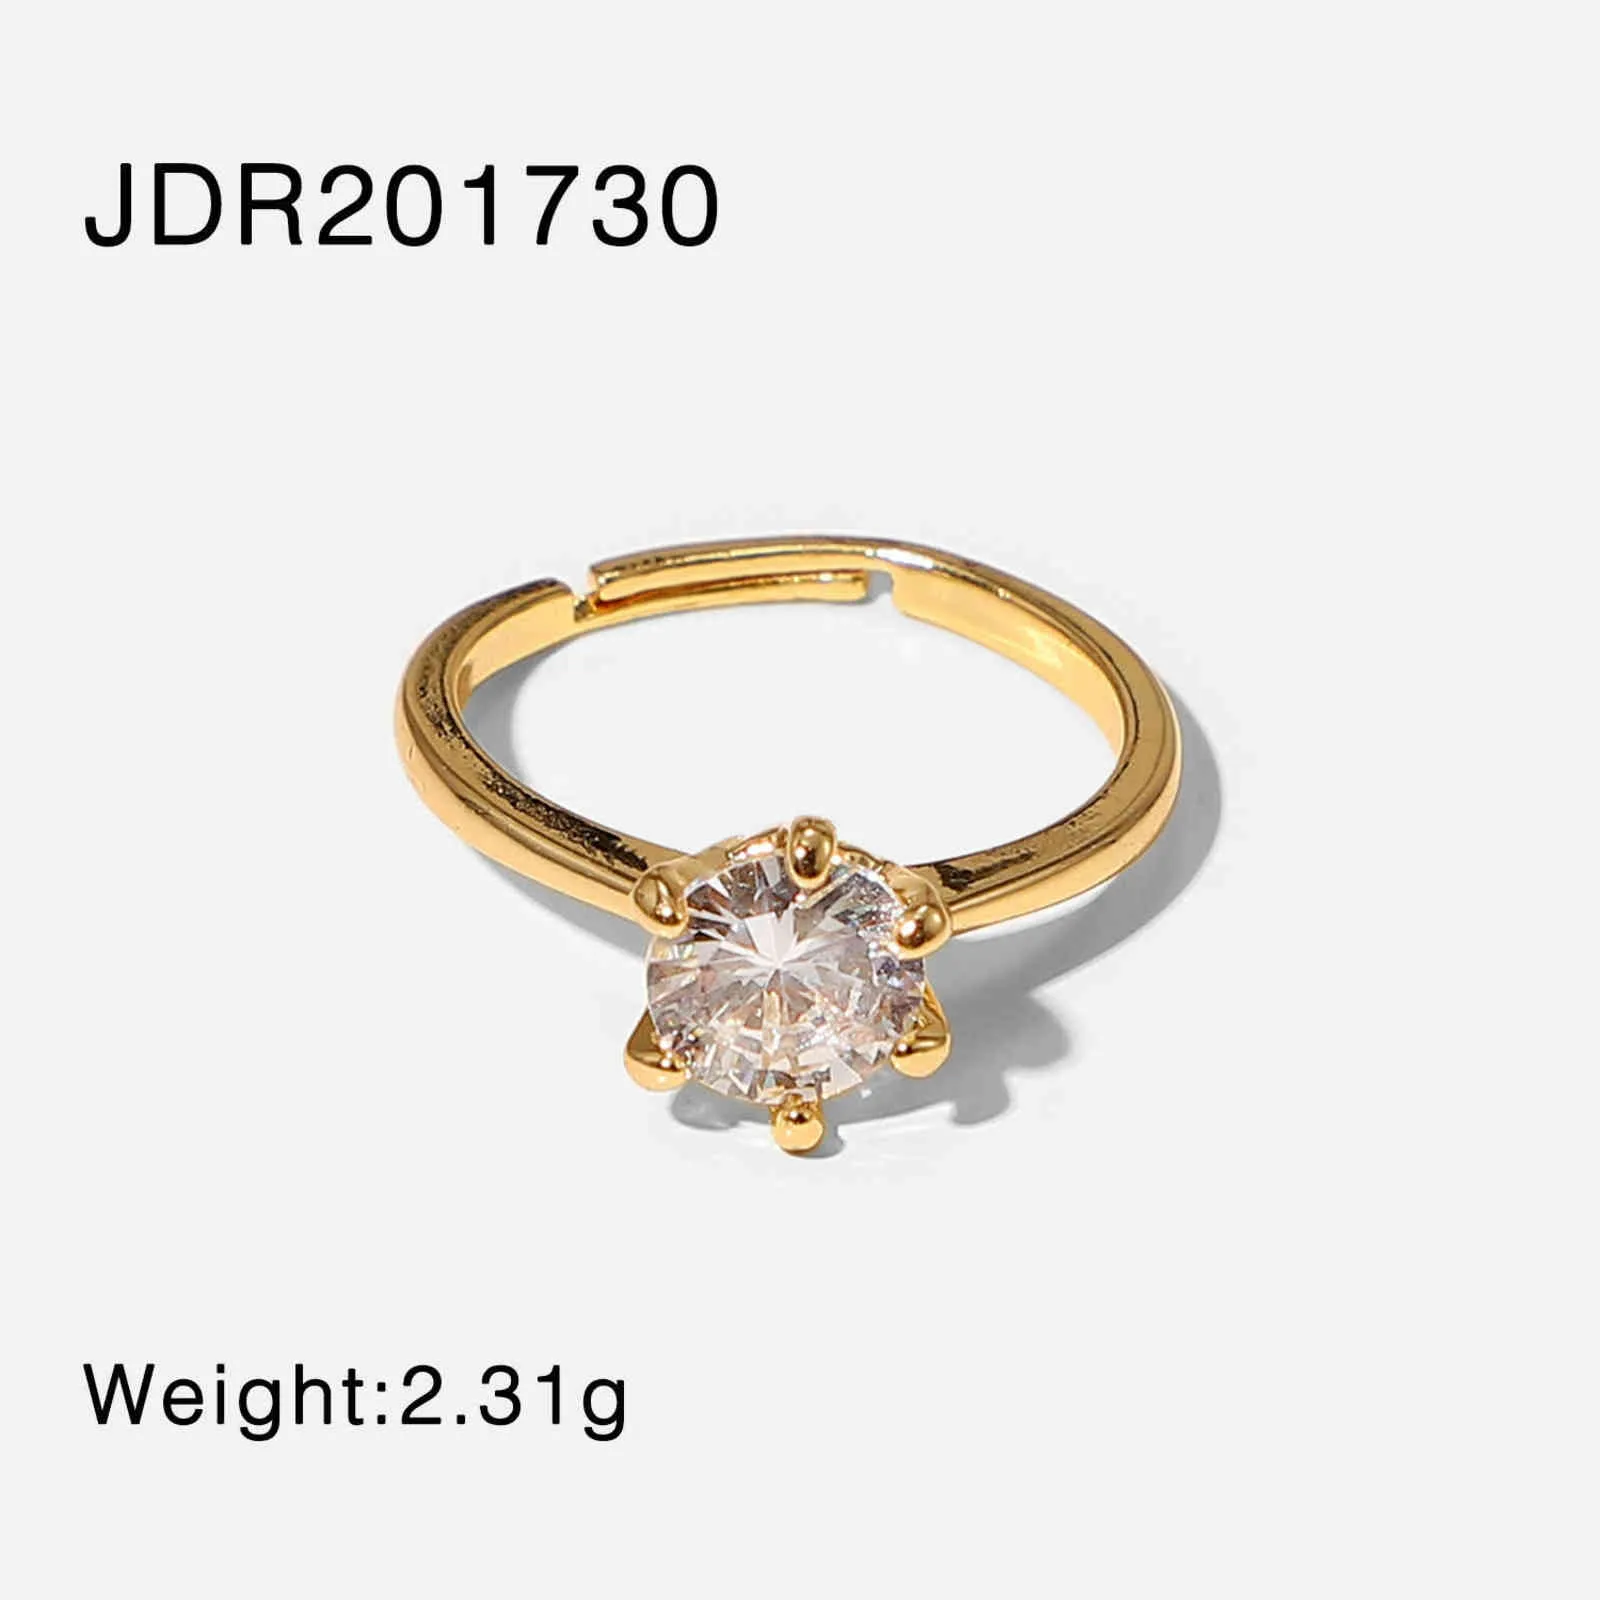 JDR201730 size